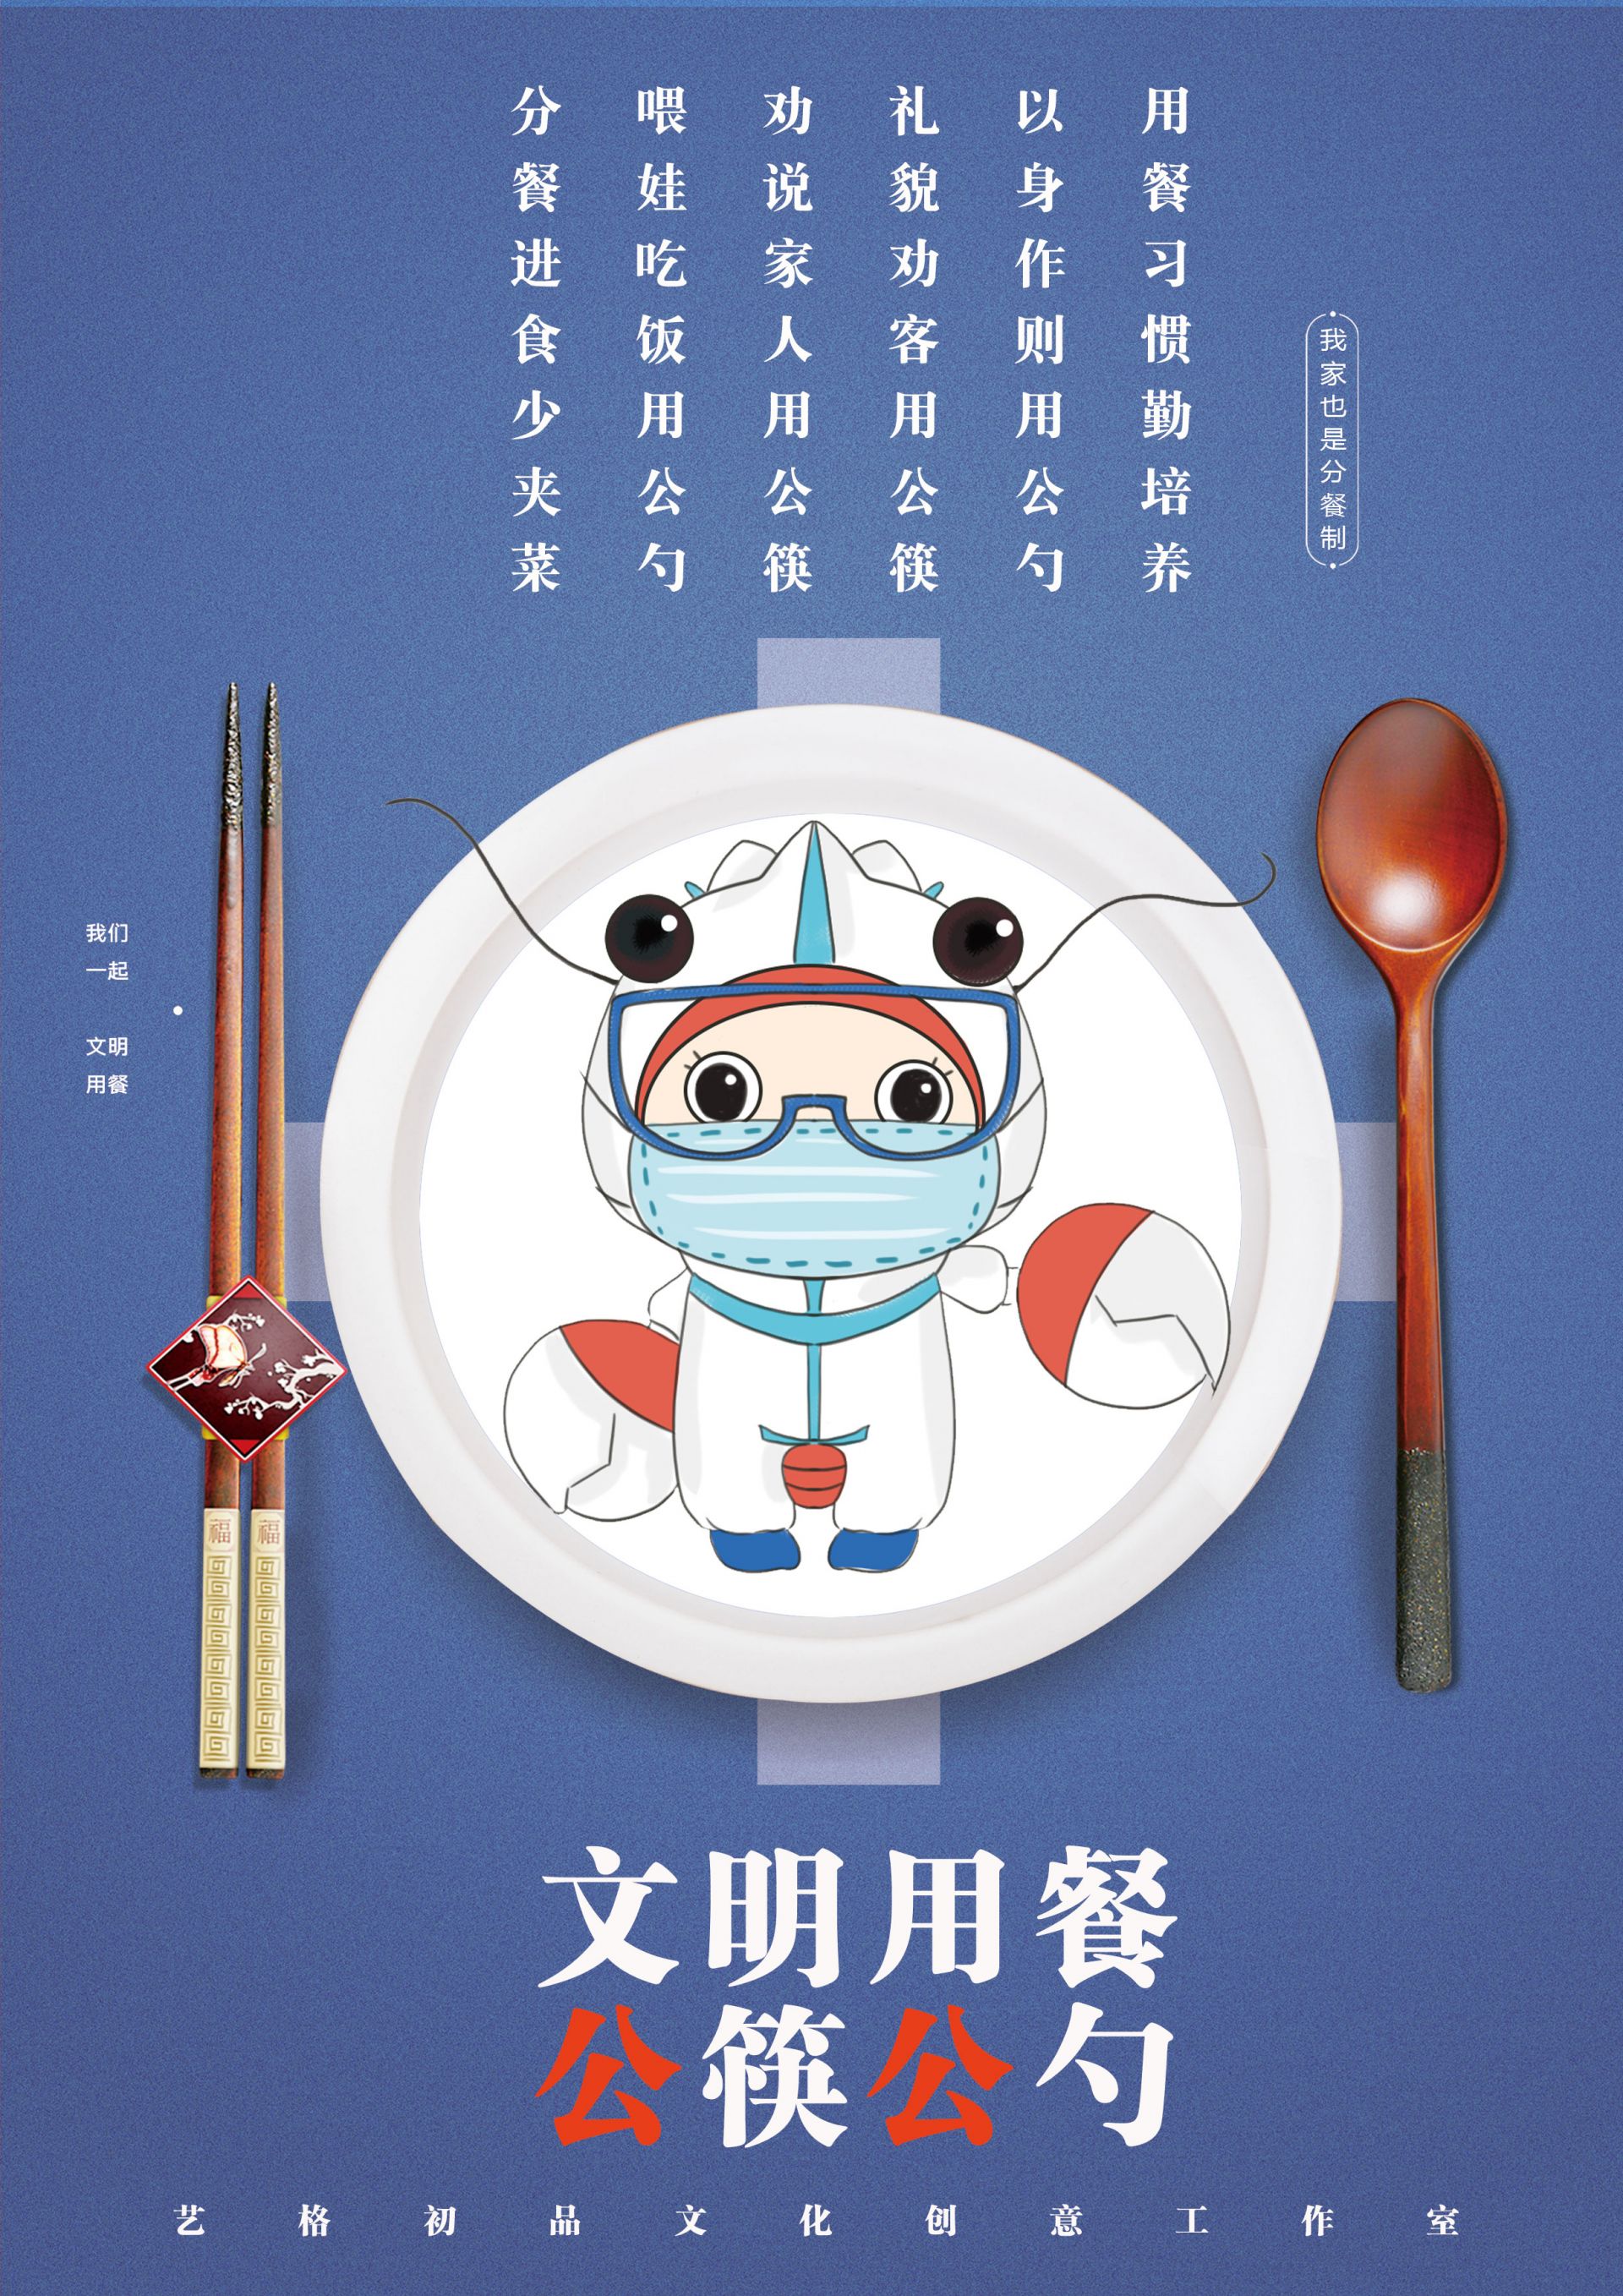 公益广告一双筷子图片